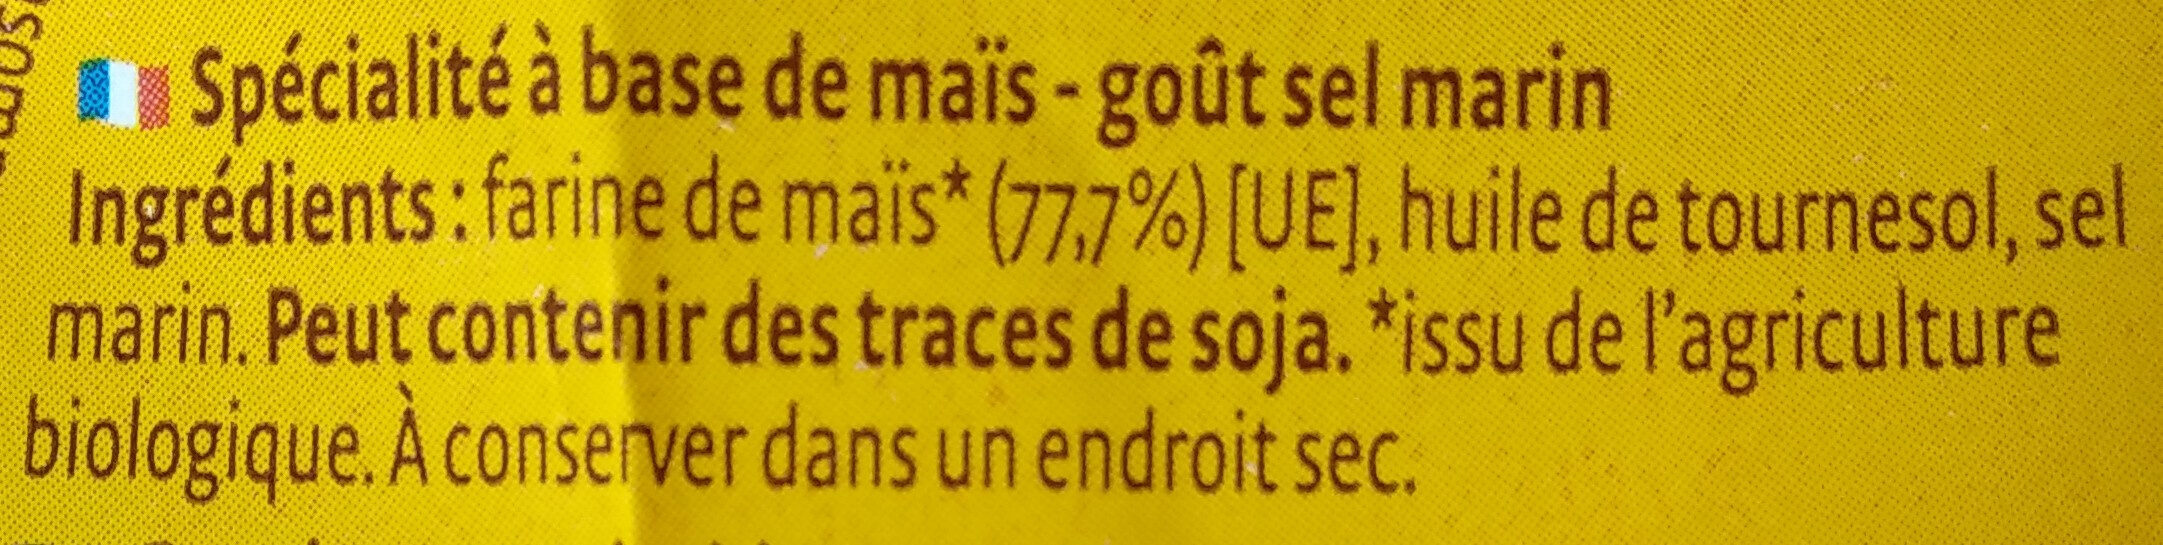 Chips'O maïs nature - Ingredients - fr